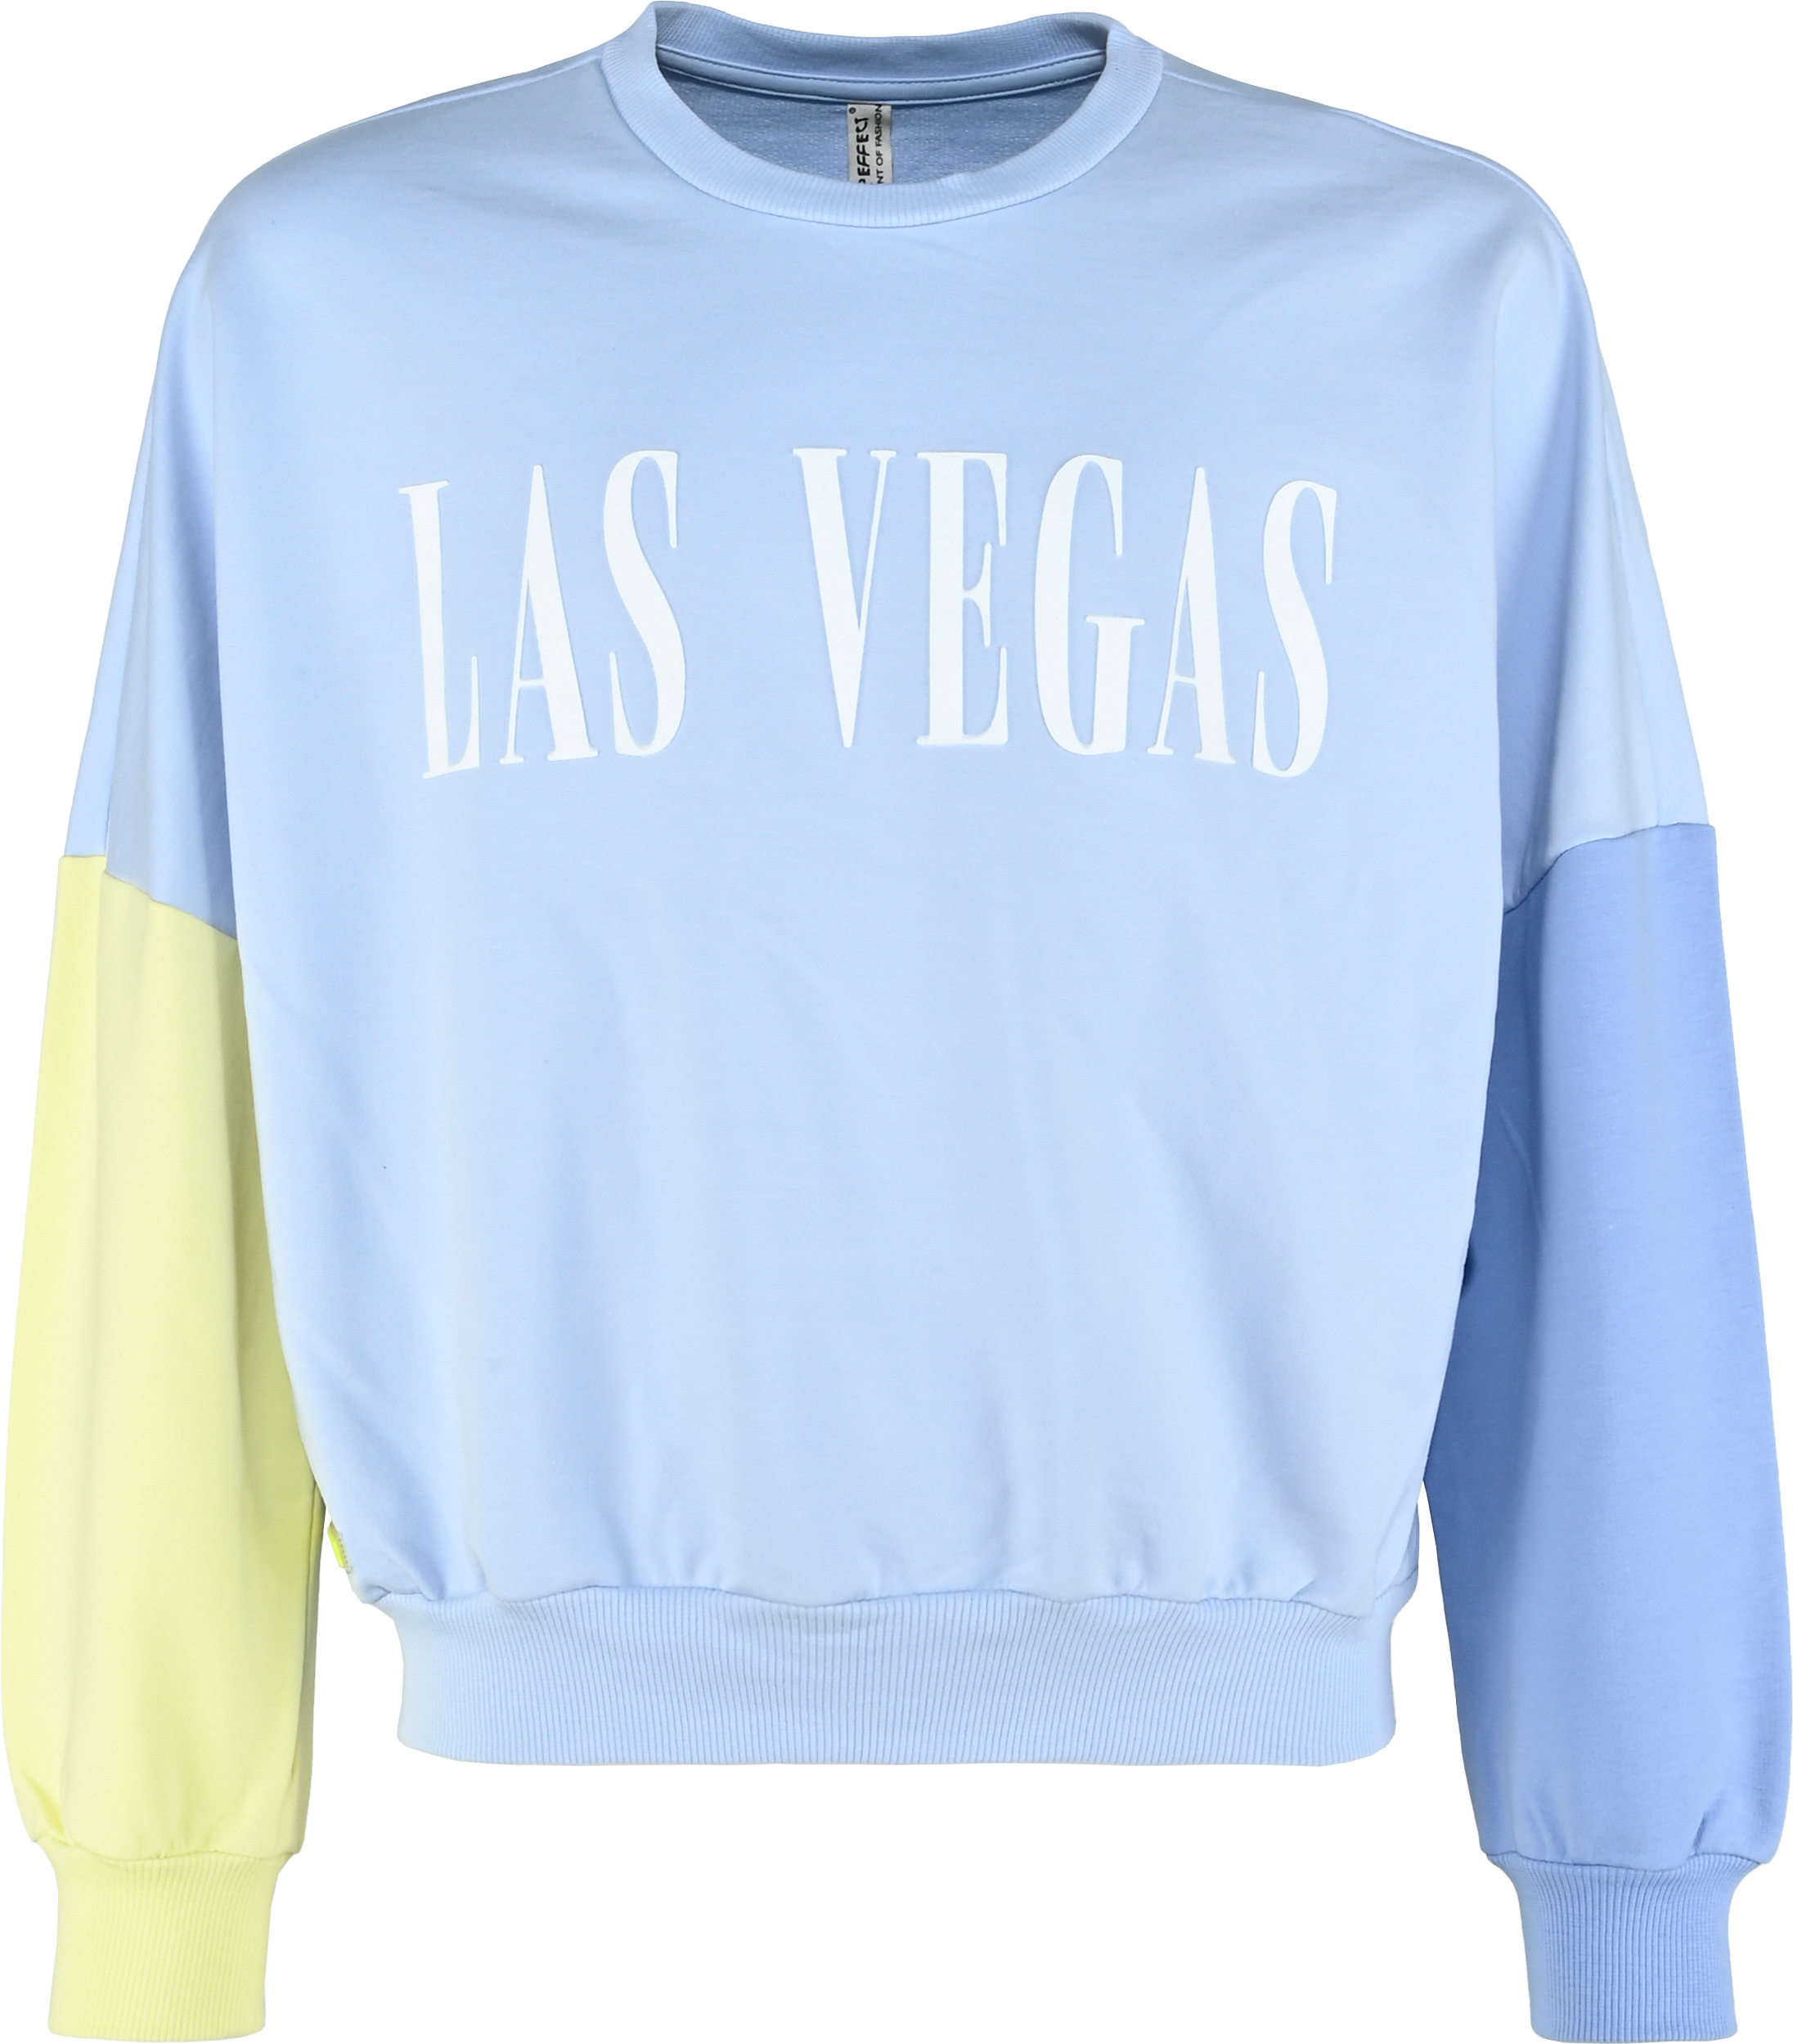 5761-Girls Sweatshirt -Las Vegas